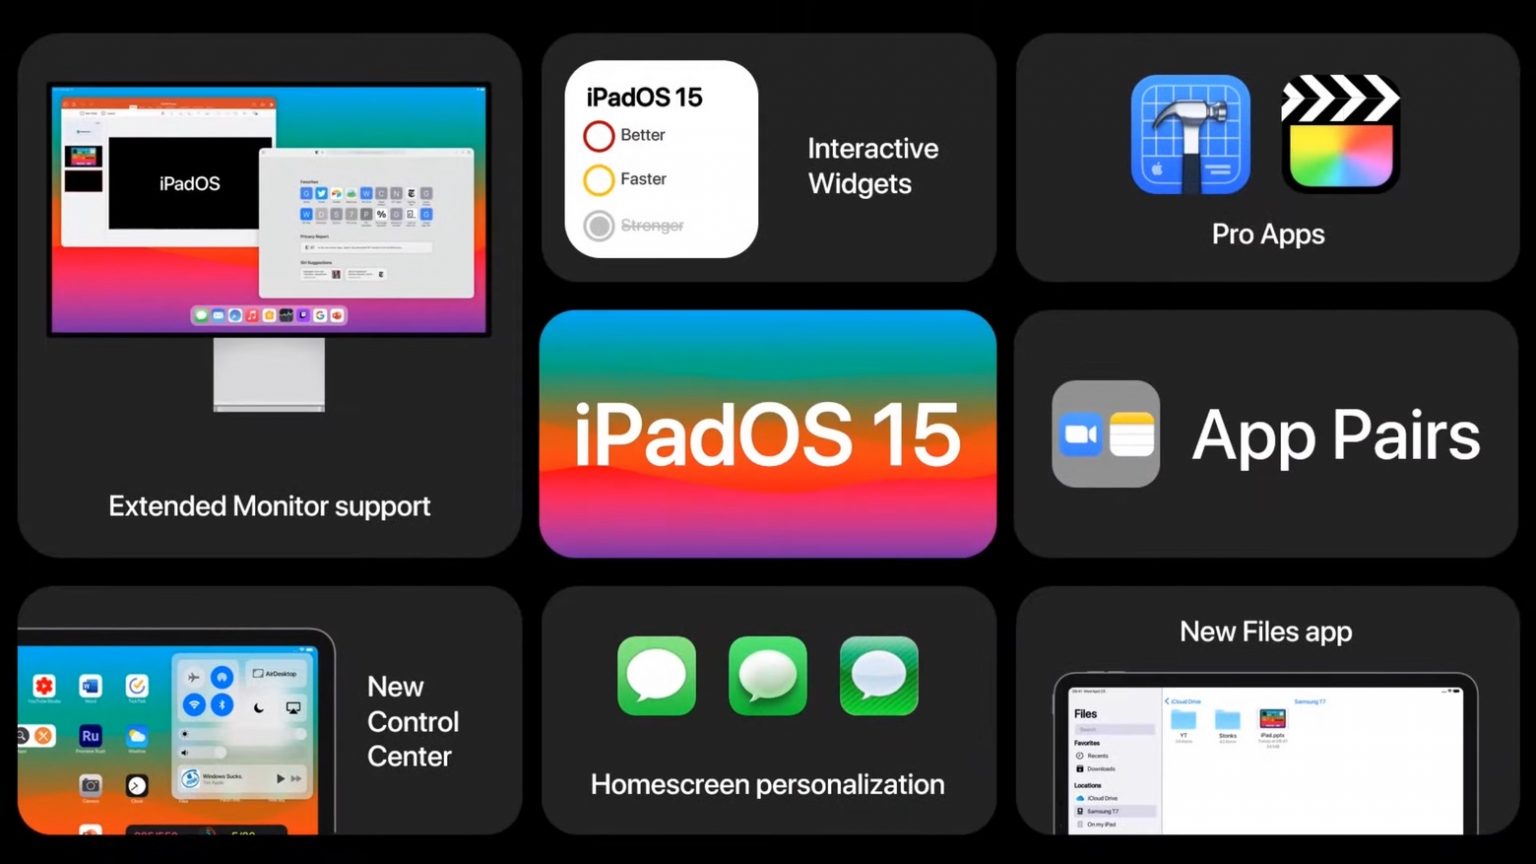 iPadOS 15 concepts showcase features fans crave